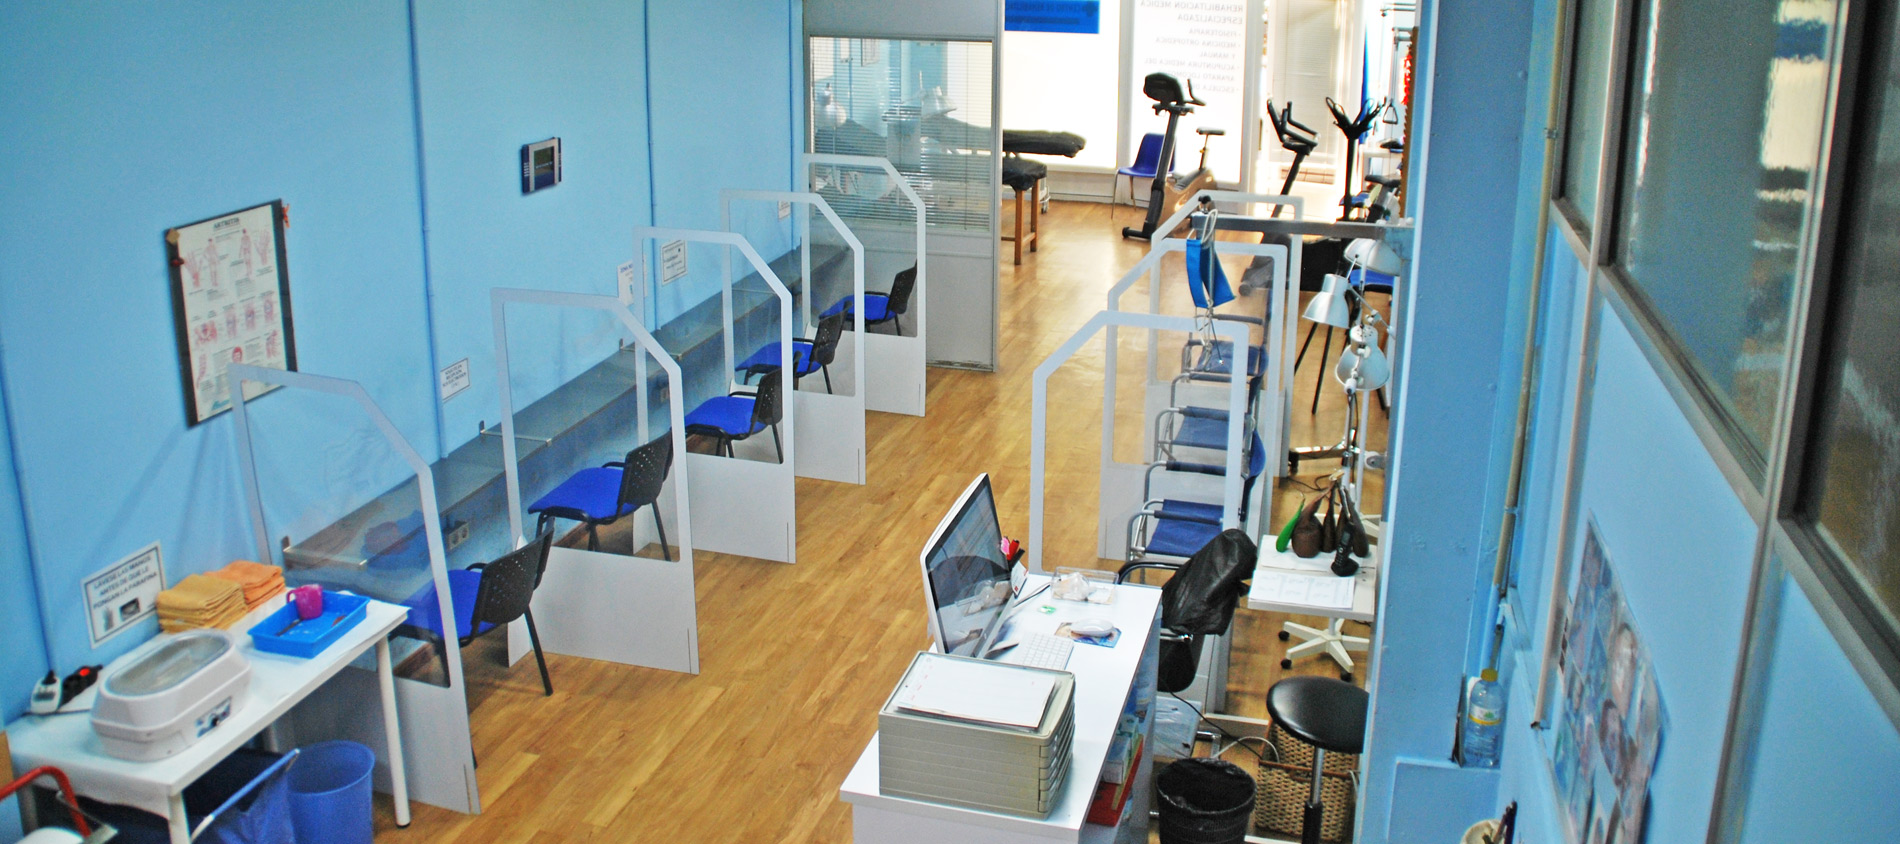 Centro de rehabilitación médica y fisioterapia Paseo al Mar en Valencia